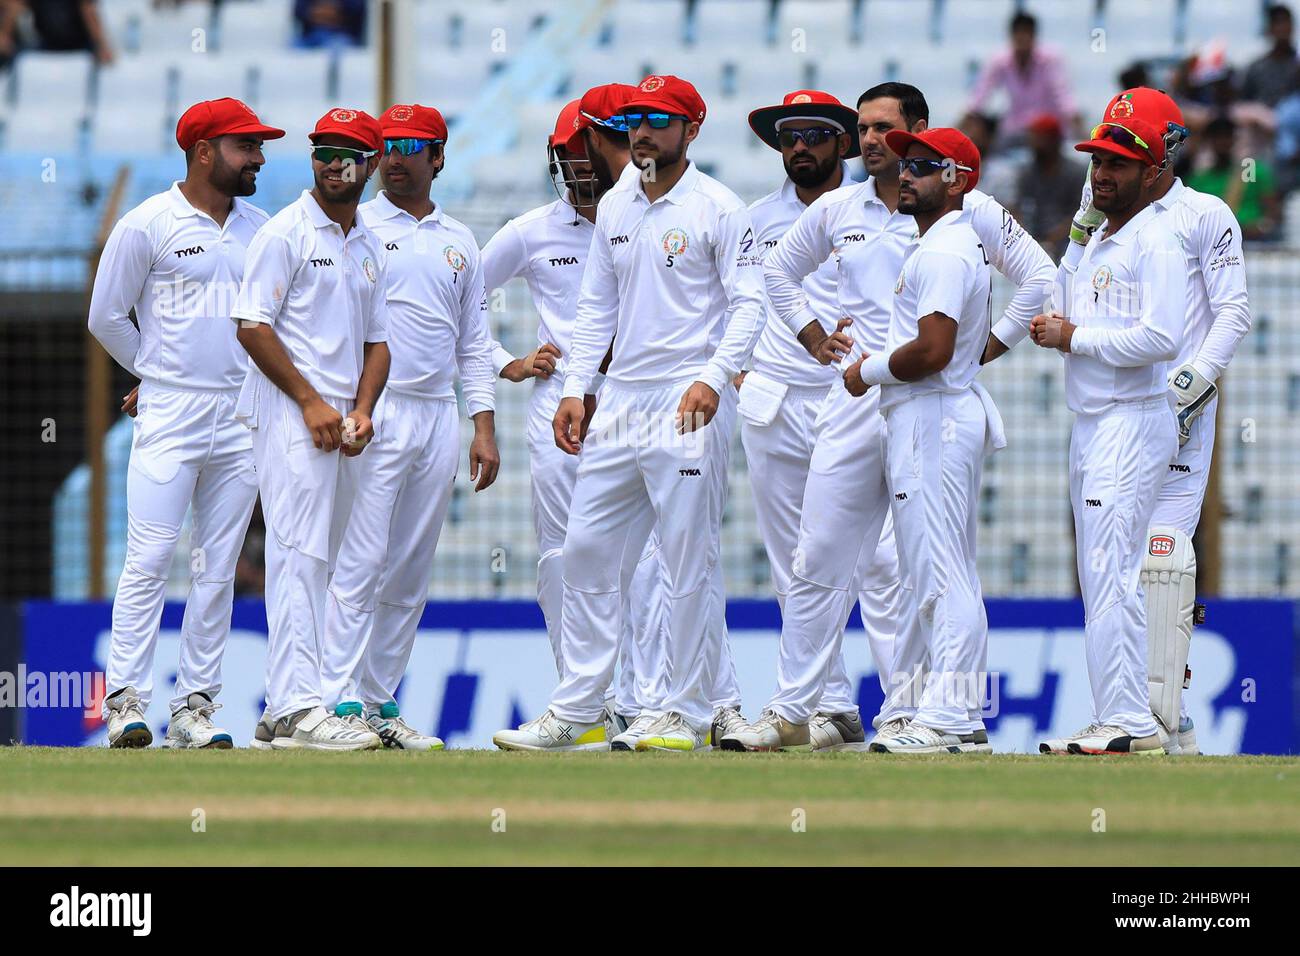 Afghanistan Cricketers Review System lors d'un match de cricket unique entre l'Afghanistan et le Bangladesh au stade Zohur Ahmed Chowdhury à Chittagong.Afghanistan gagné par 224 tours Banque D'Images